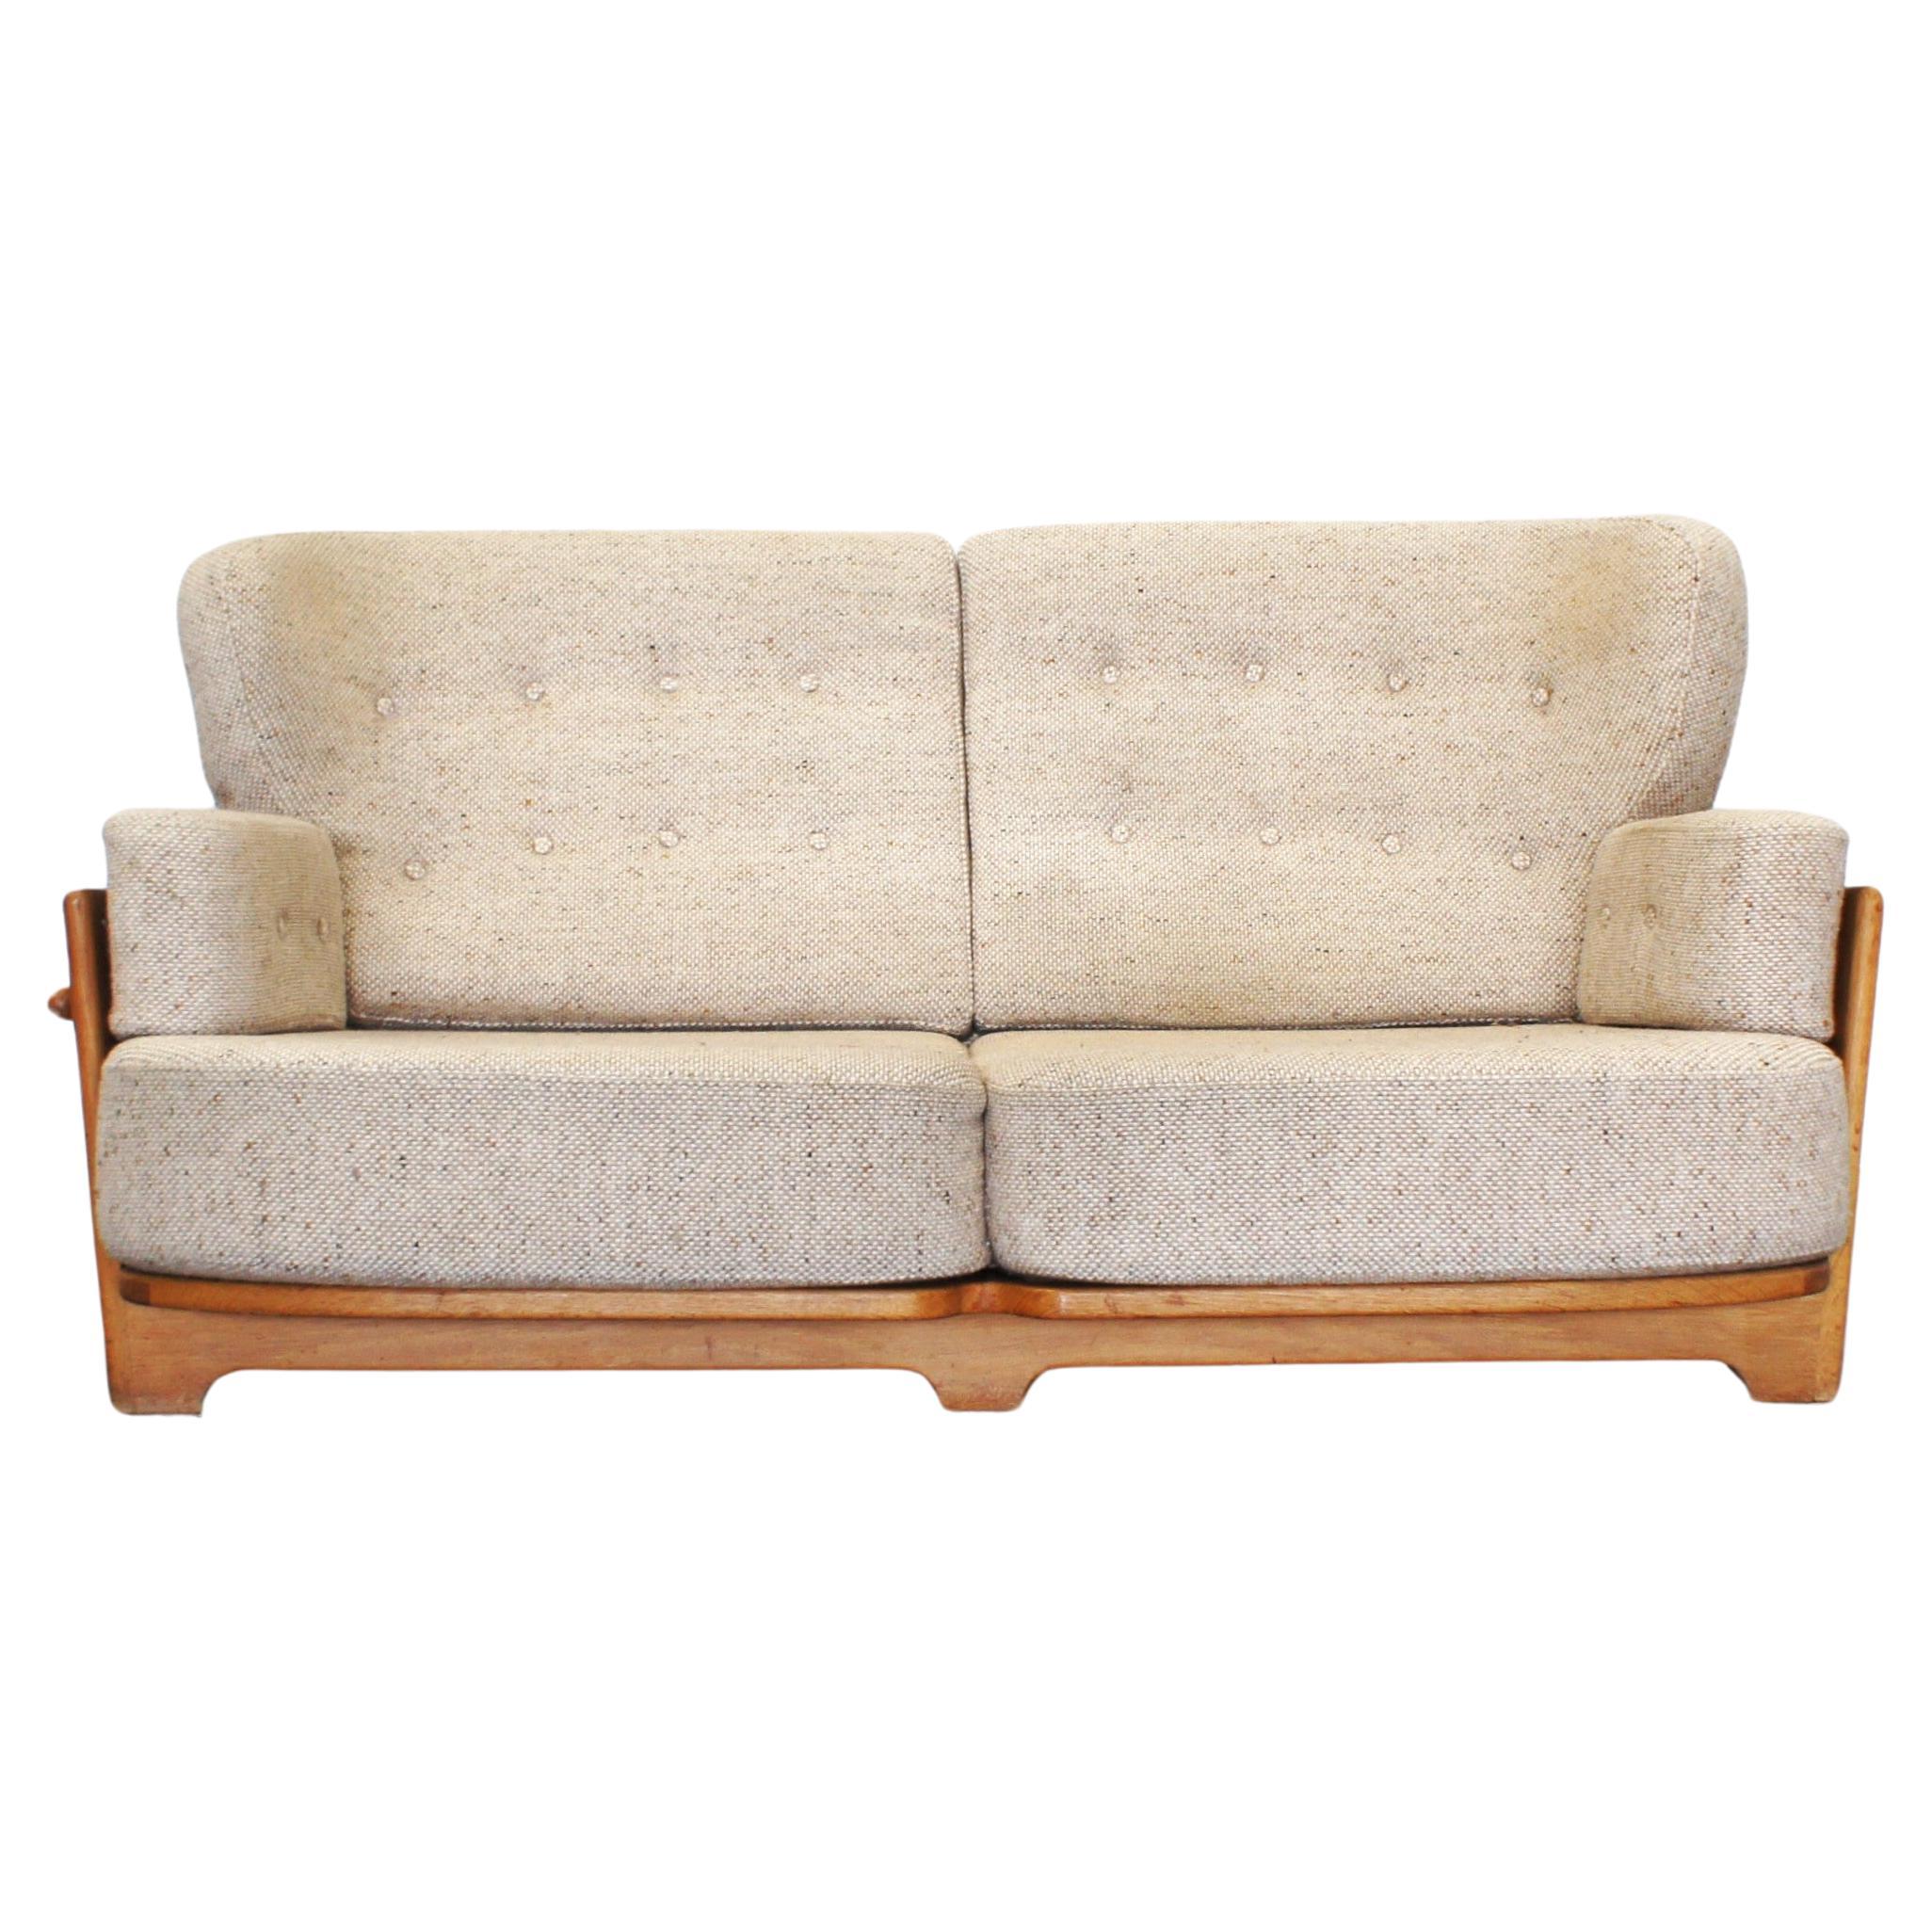 Sofa Model "Denis" by Guillerme et Chambron for Votre Maison éditeur